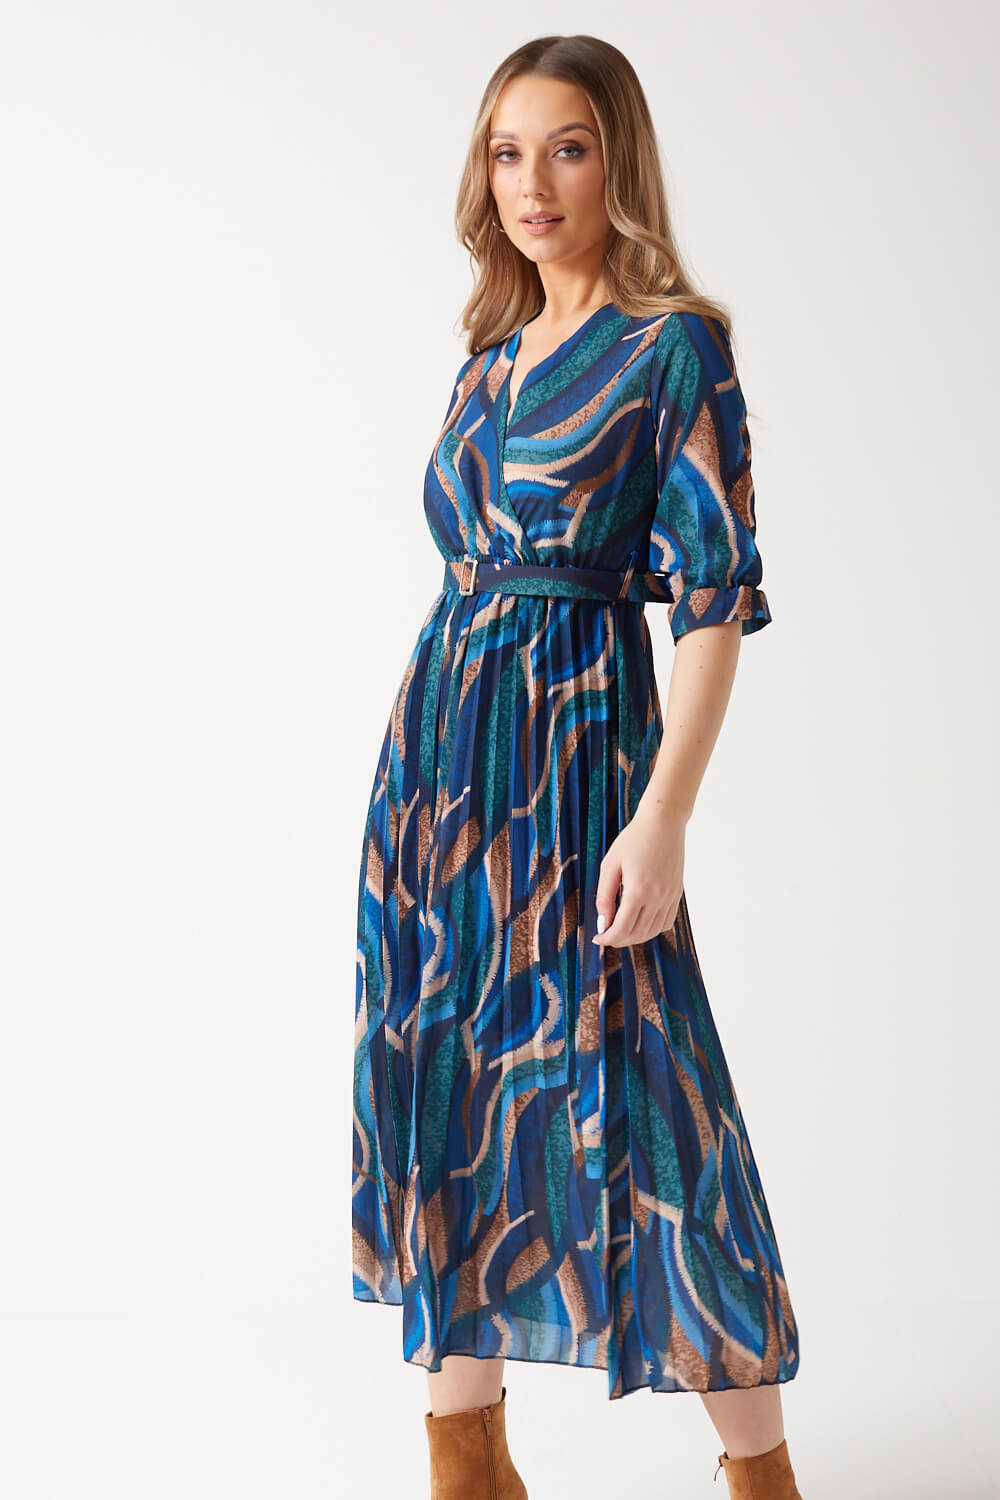 Positano Belted long Dress -WHT x nvy- | ortigueiramais.com.br